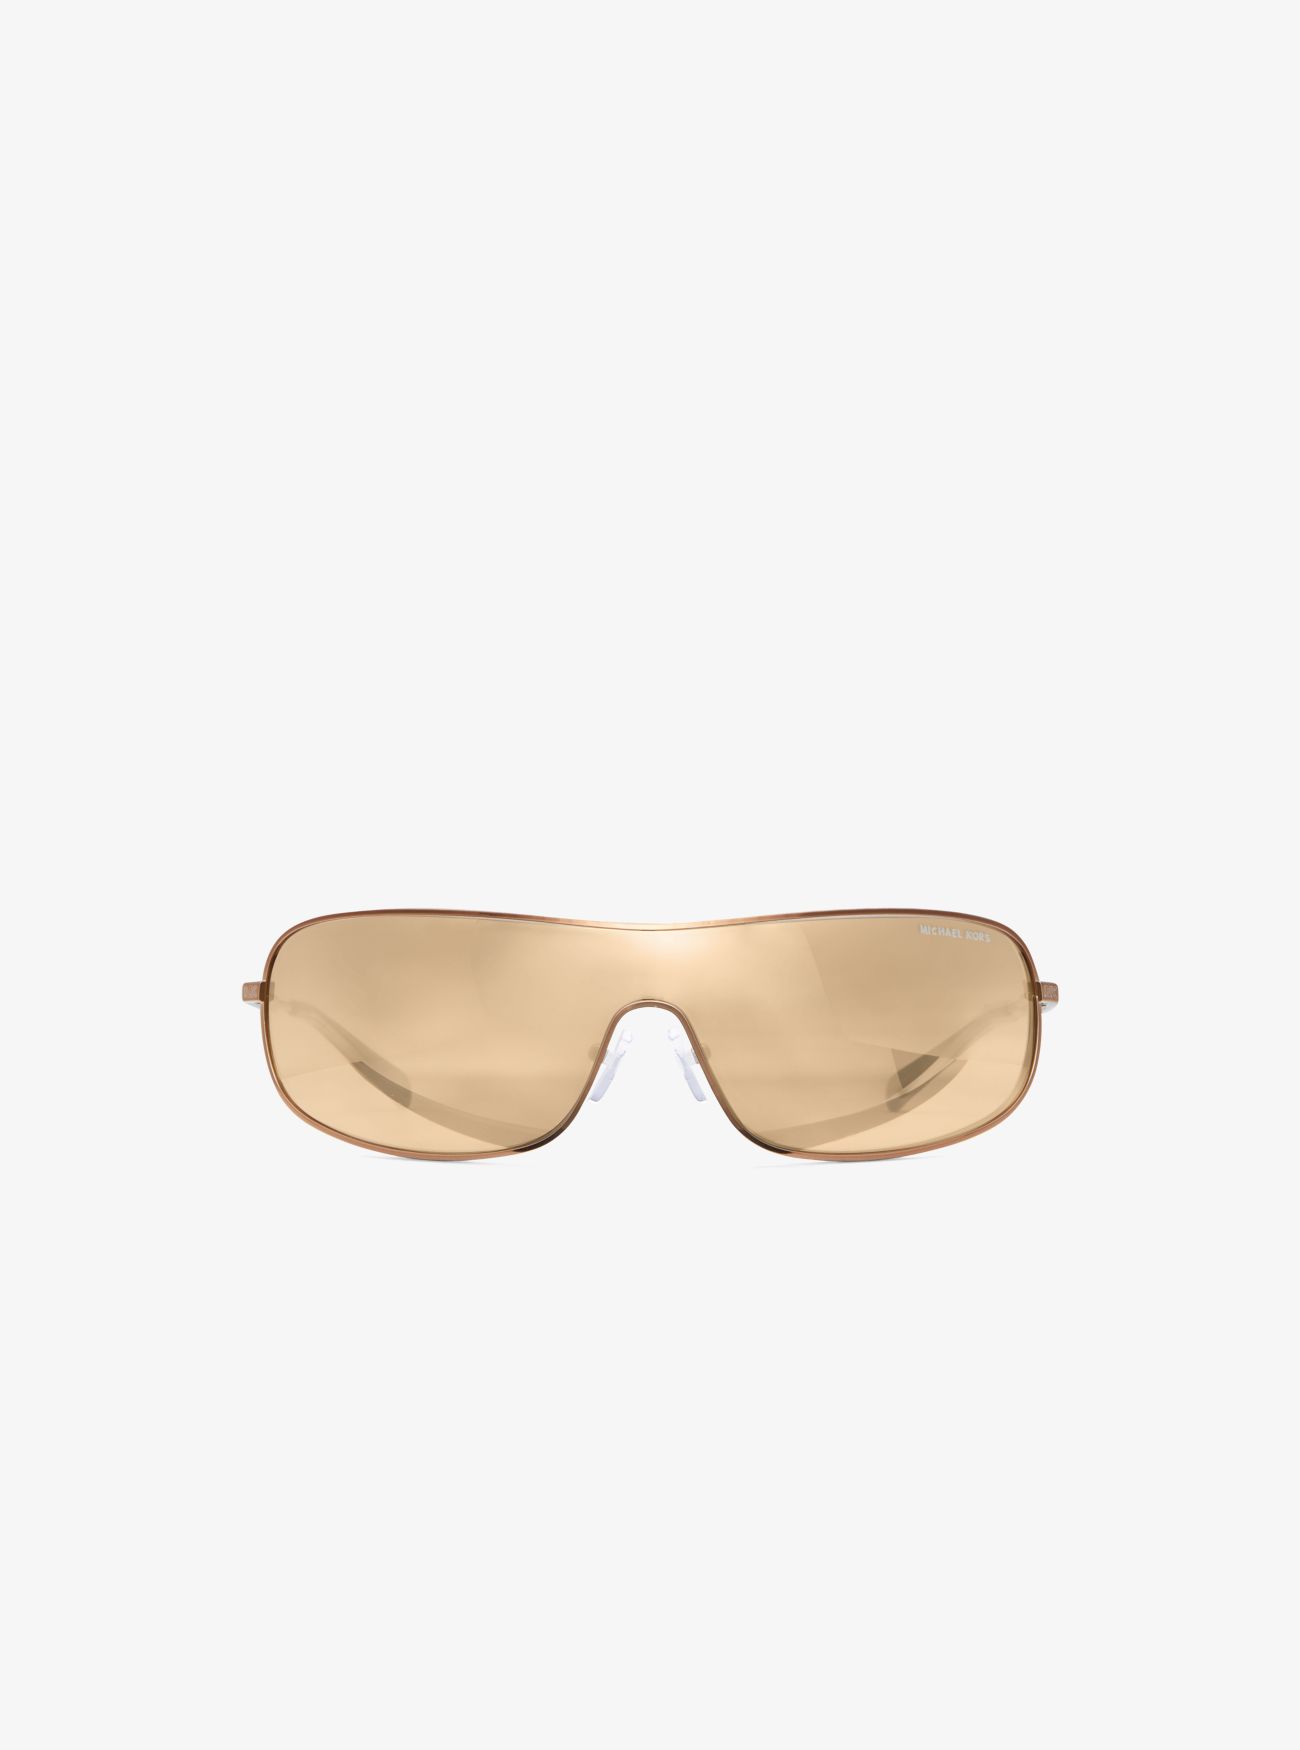 MK Aix Sunglasses - Natural - Michael Kors